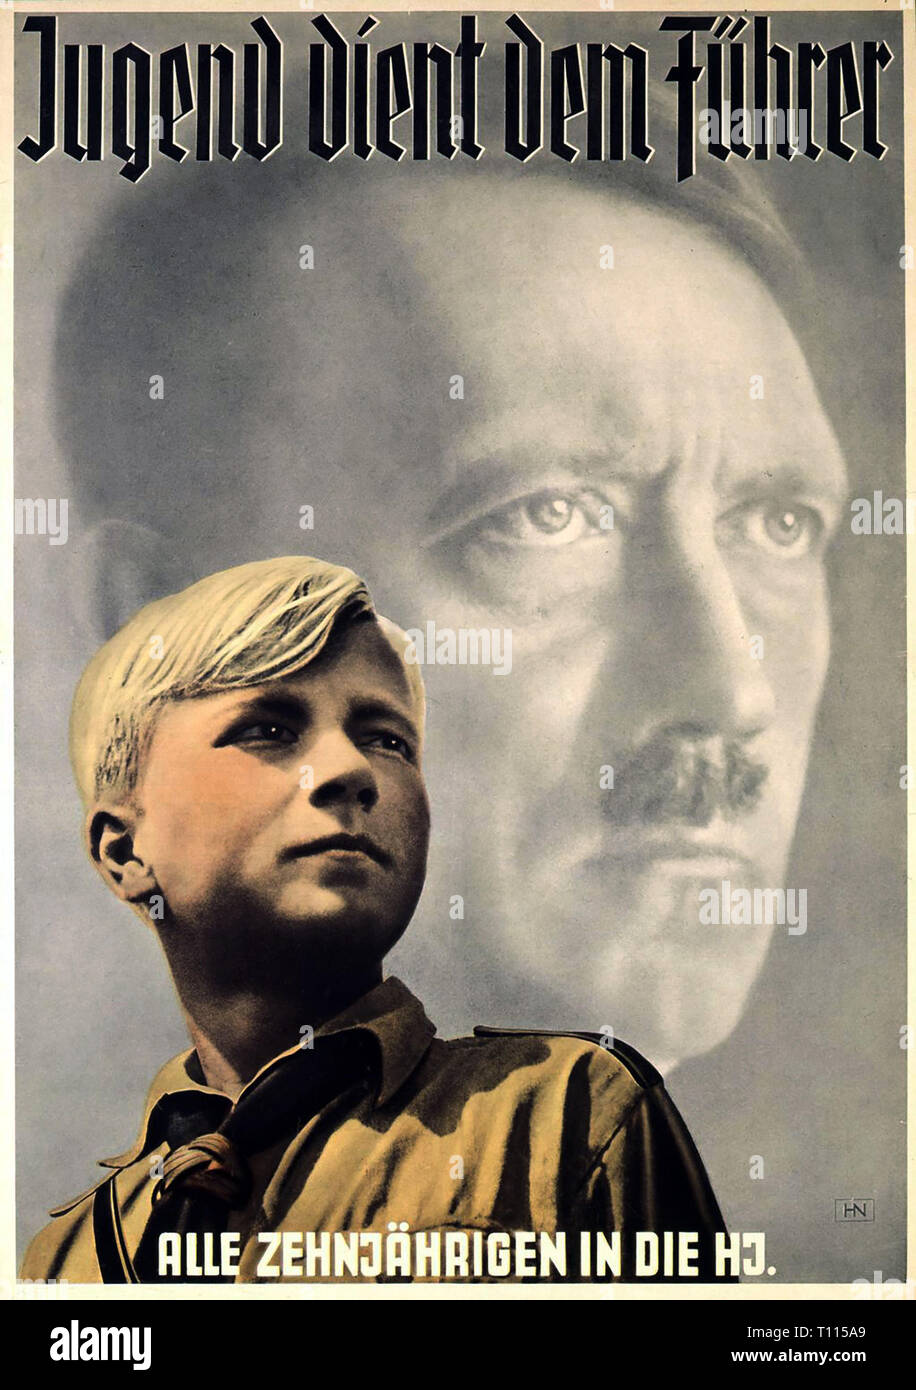 El nazismo / el Nacional Socialismo, organizaciones de la Juventud de Hitler Sección Junior, póster "Jugend dient Fuehrer dem" (La juventud es servir al Fuehrer), diseño: Hein Neuner (1910 - 1984) 1939, Additional-Rights-Clearance-Info-Not-Available Foto de stock